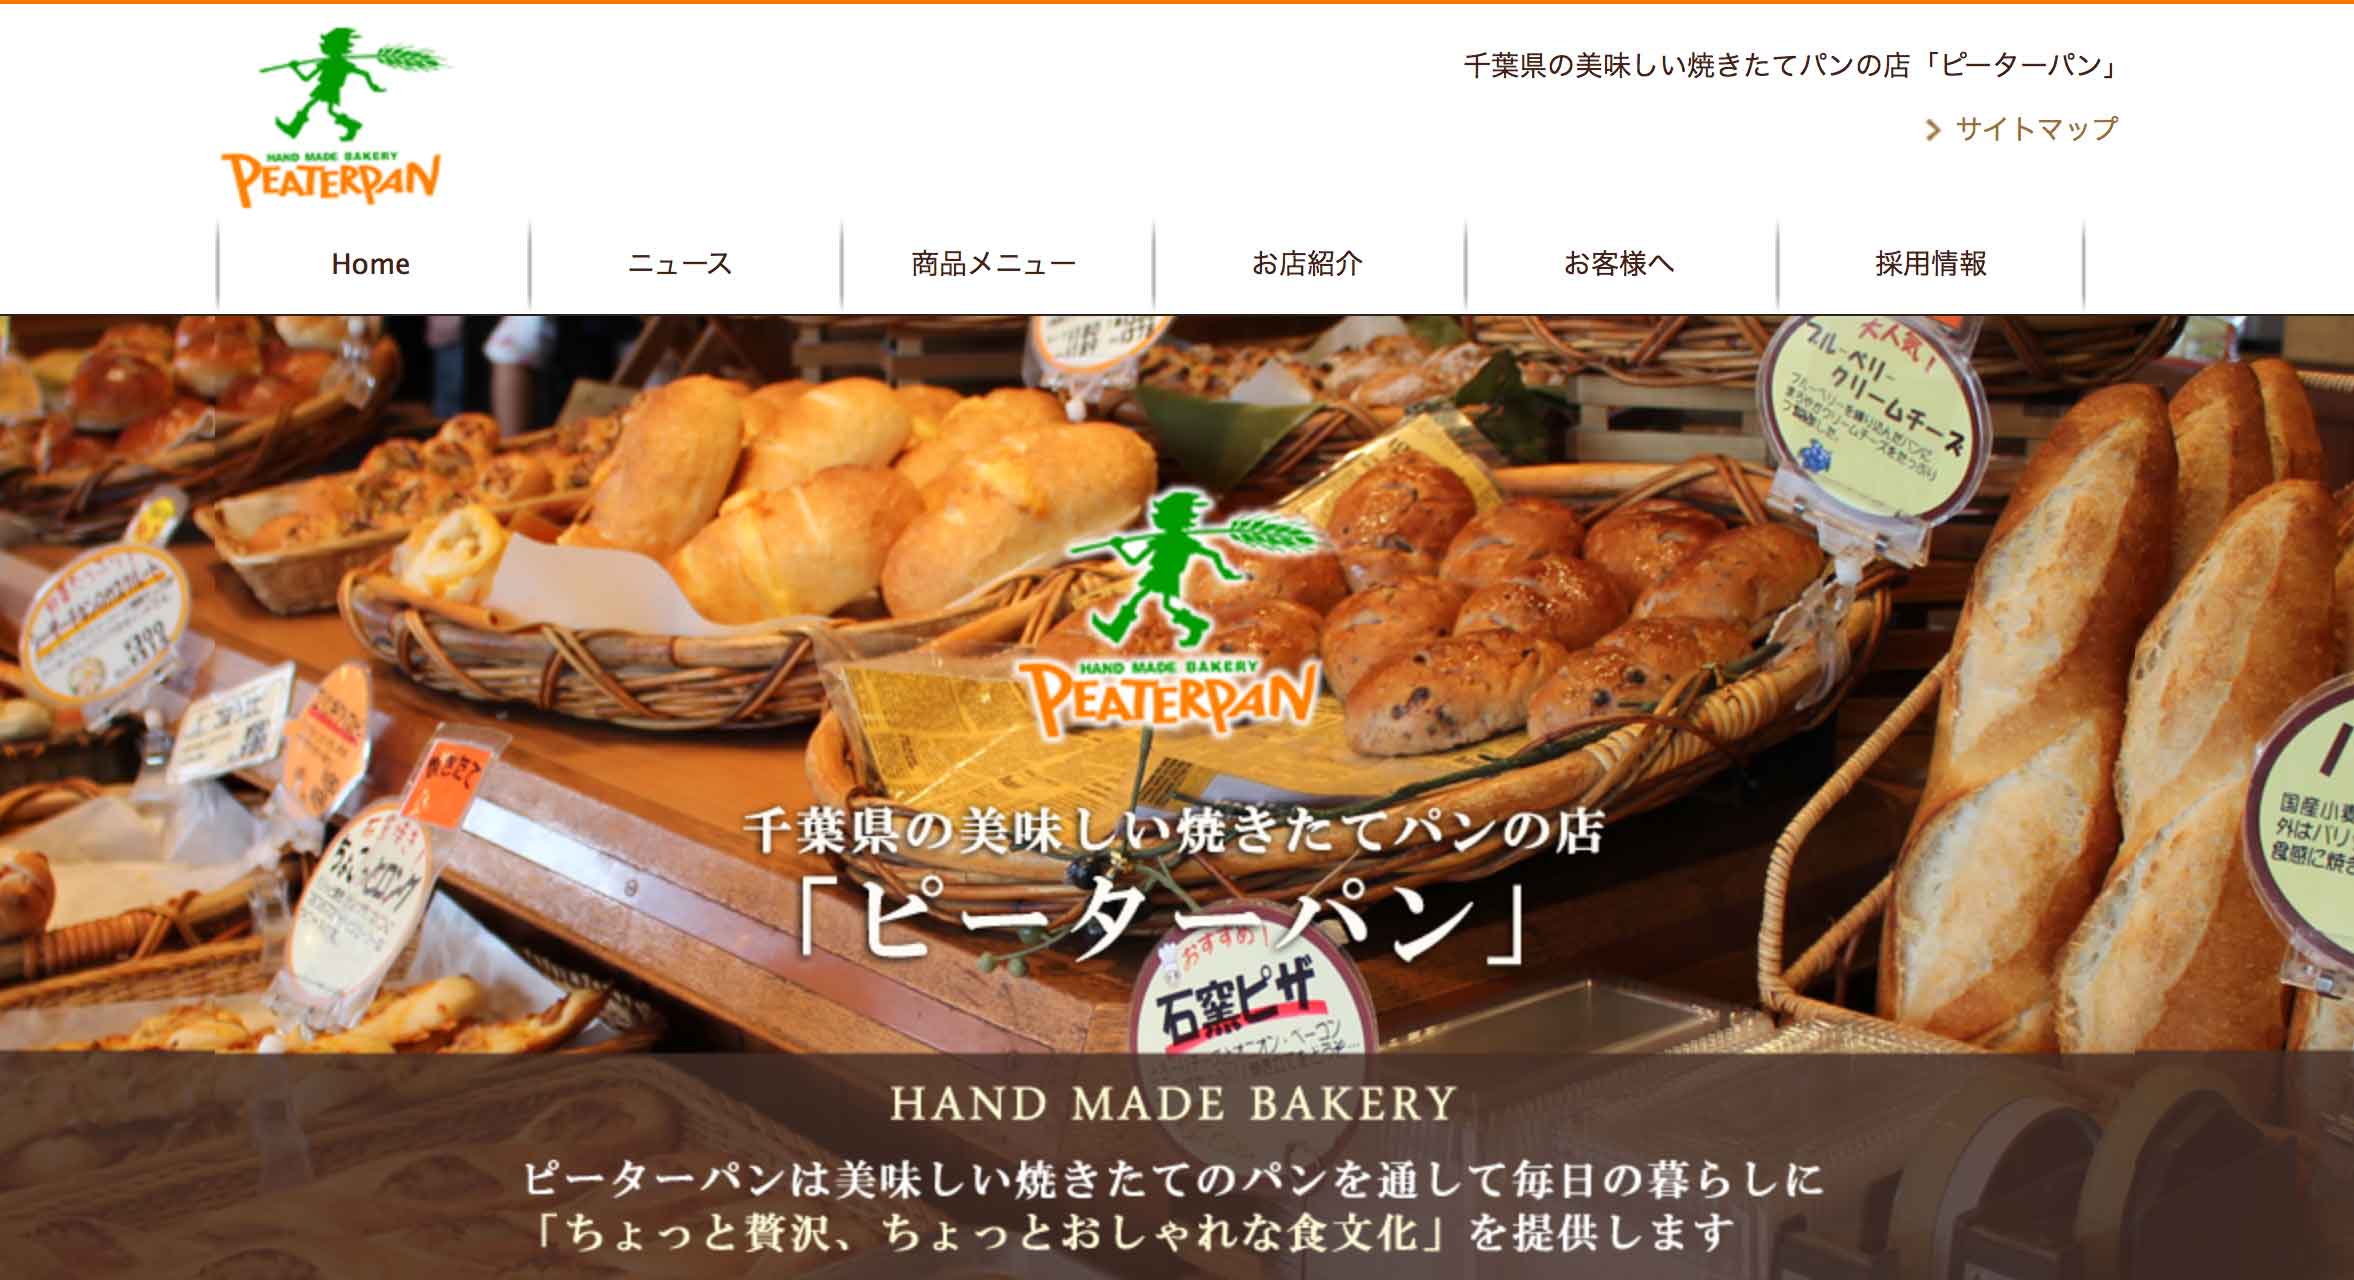 人気のパン屋 ピーターパン 各店で7 27 8 5に夏祭りが開催されるみたい 鎌ケ谷船橋あたり